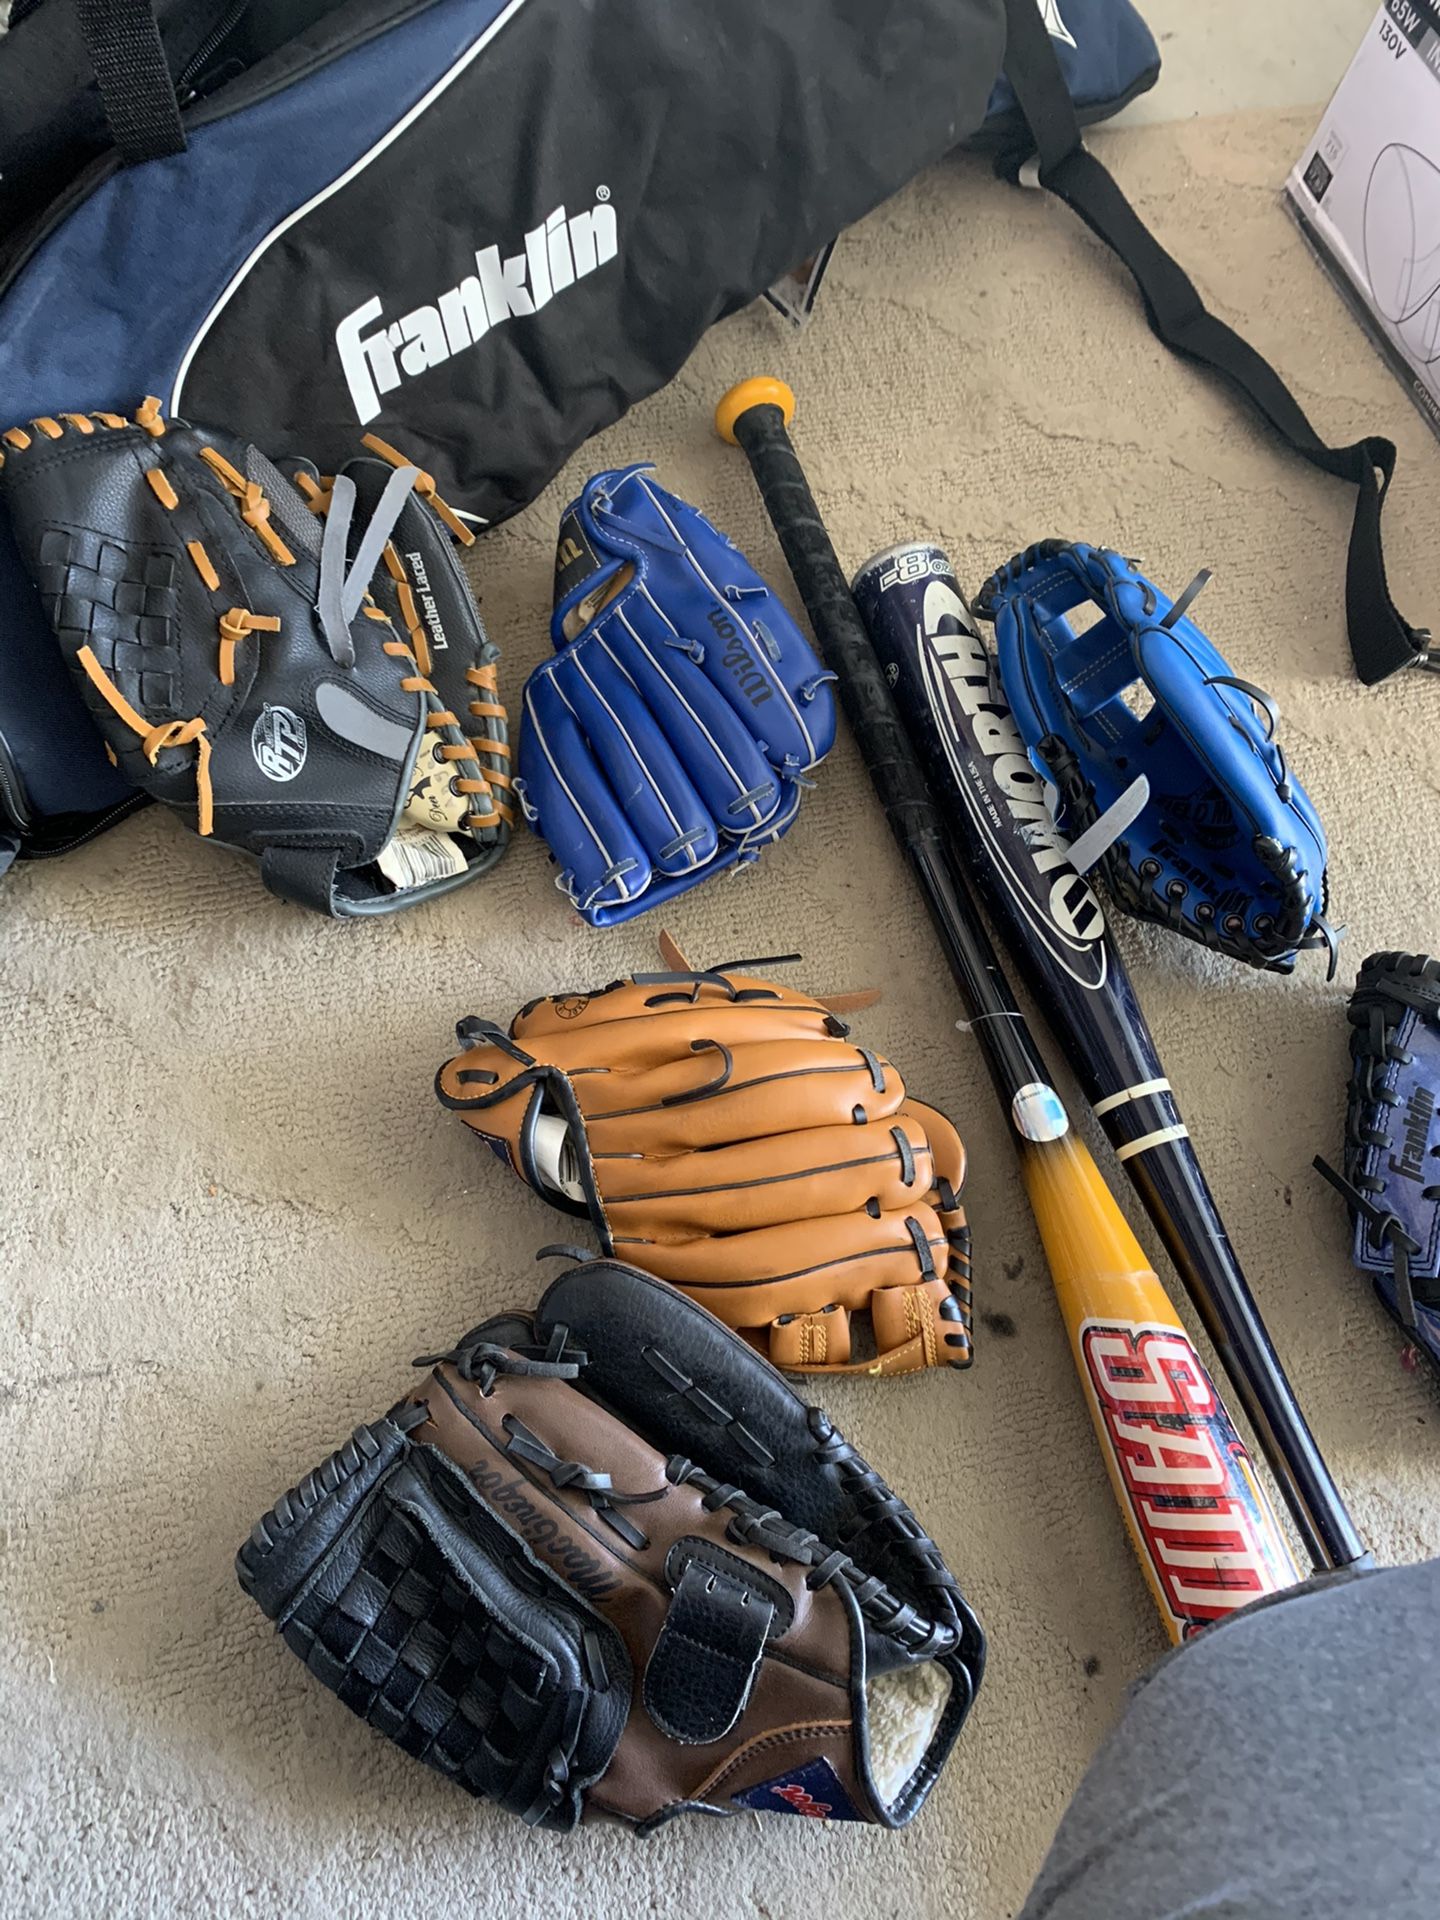 Baseball gloves and bats